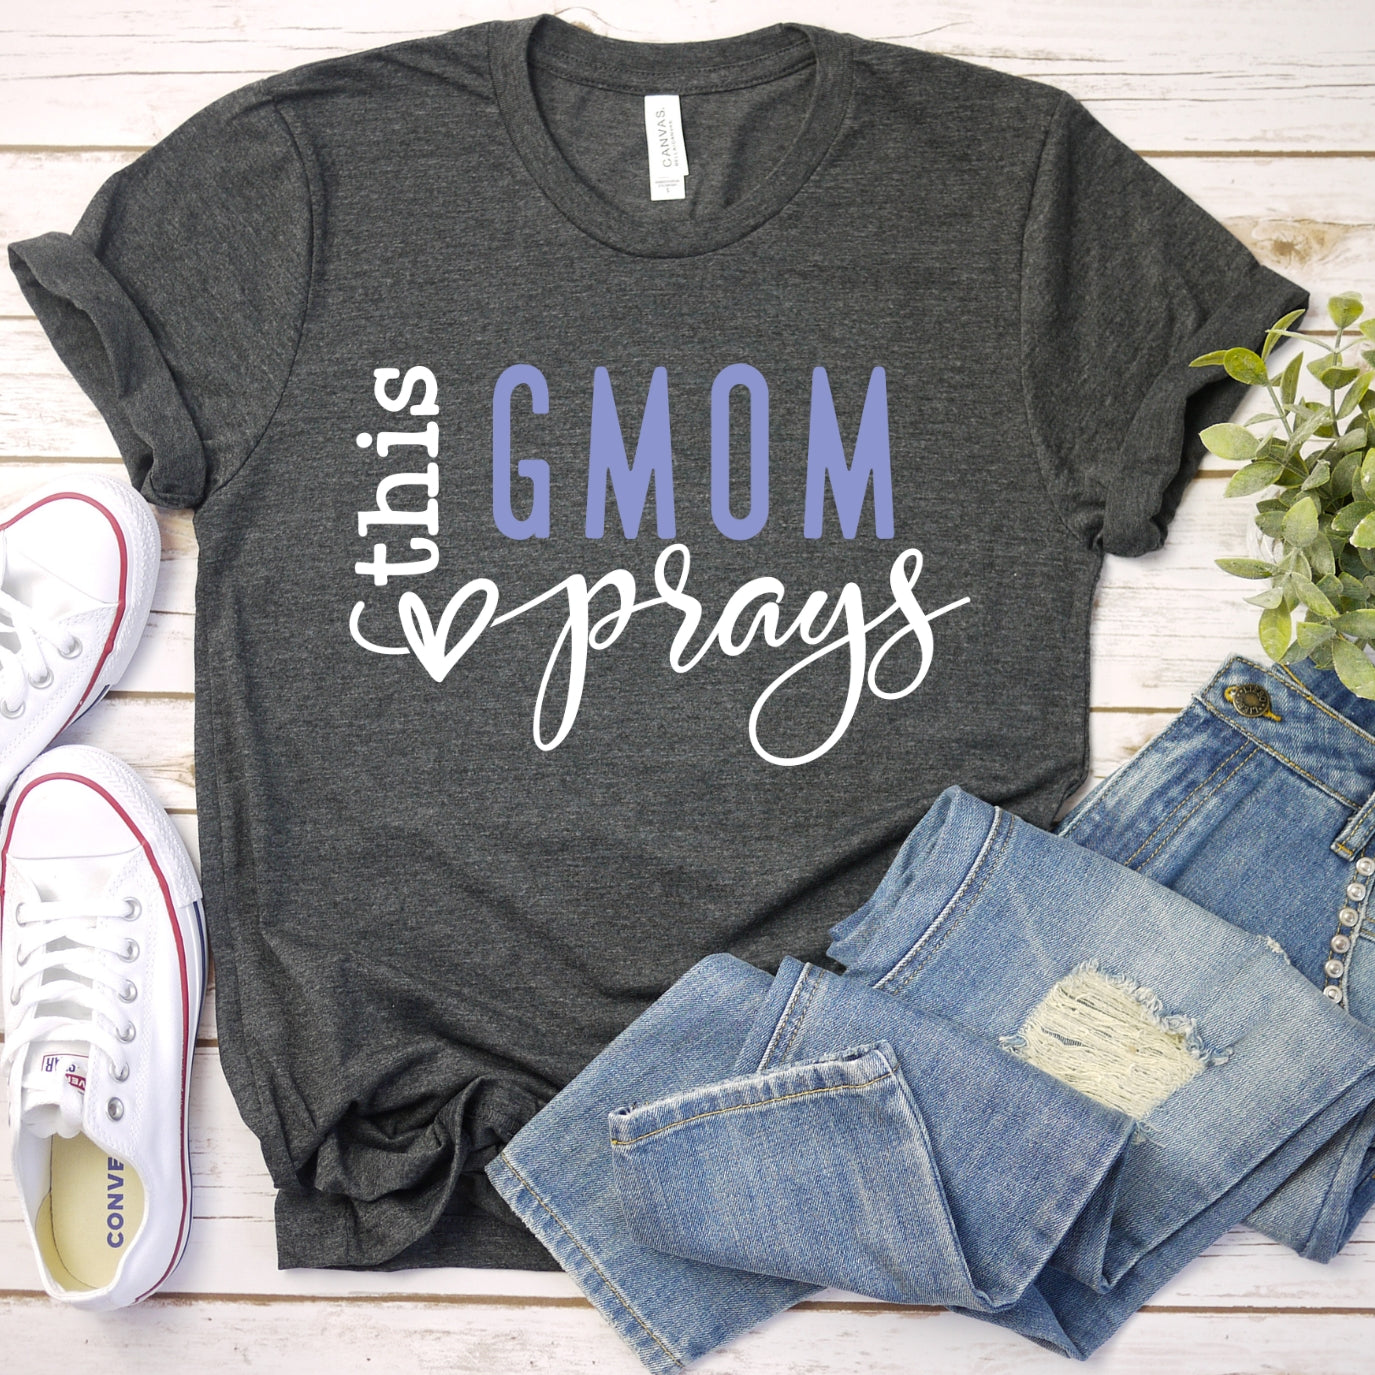 This Gmom Prays Women's T-Shirt